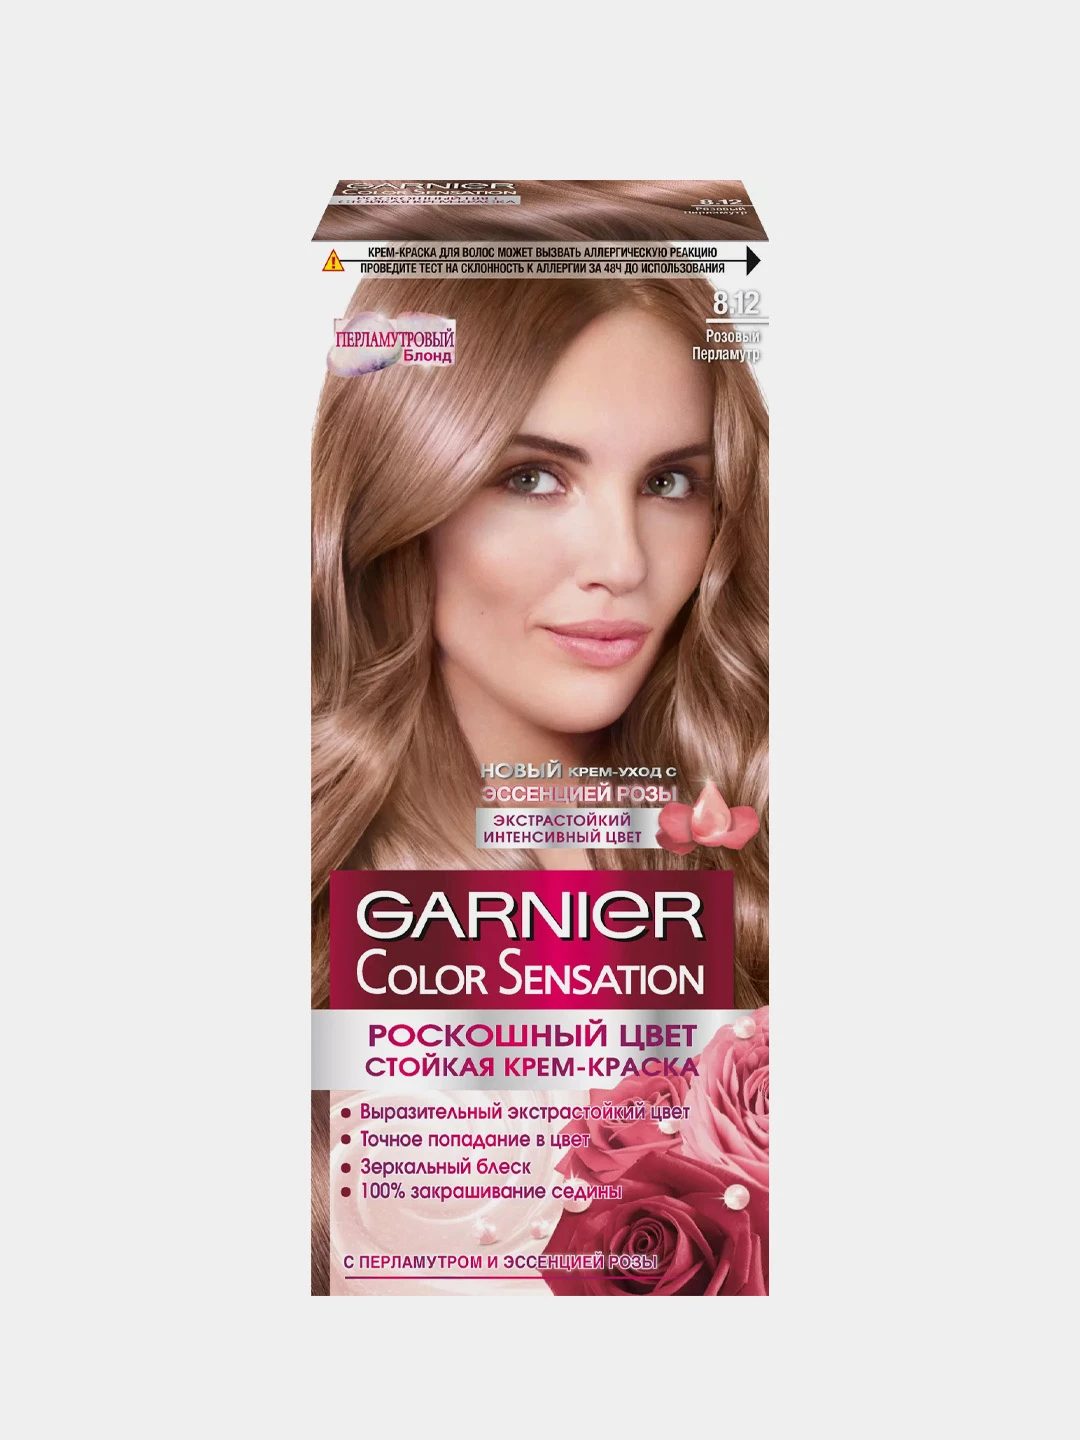 Гарньер розовый отзывы. Гарньер сенсейшен 8.12. Краска Garnier Color Sensation. Garnier Color Sensation, оттенок 8.24. Краска для волос гарньер колор сенсейшен 8.12.